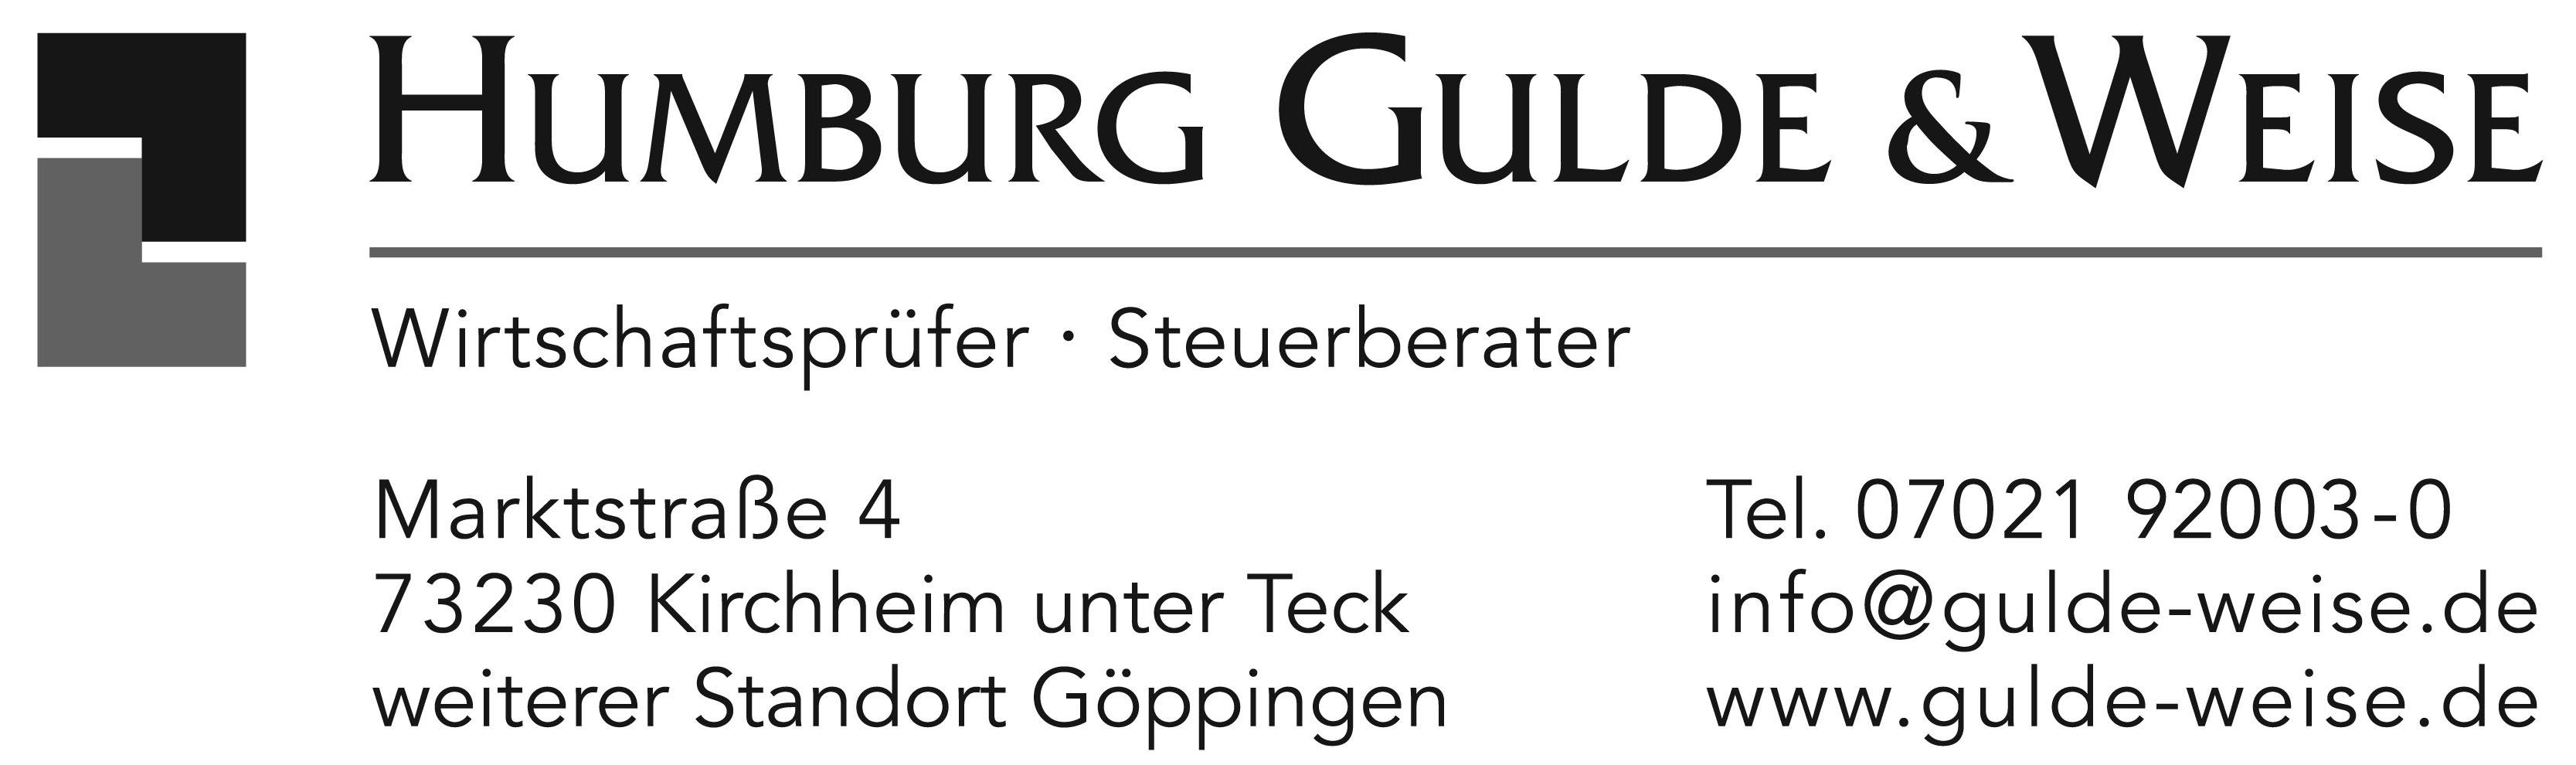 Logo-Humburg Gulden & Weise